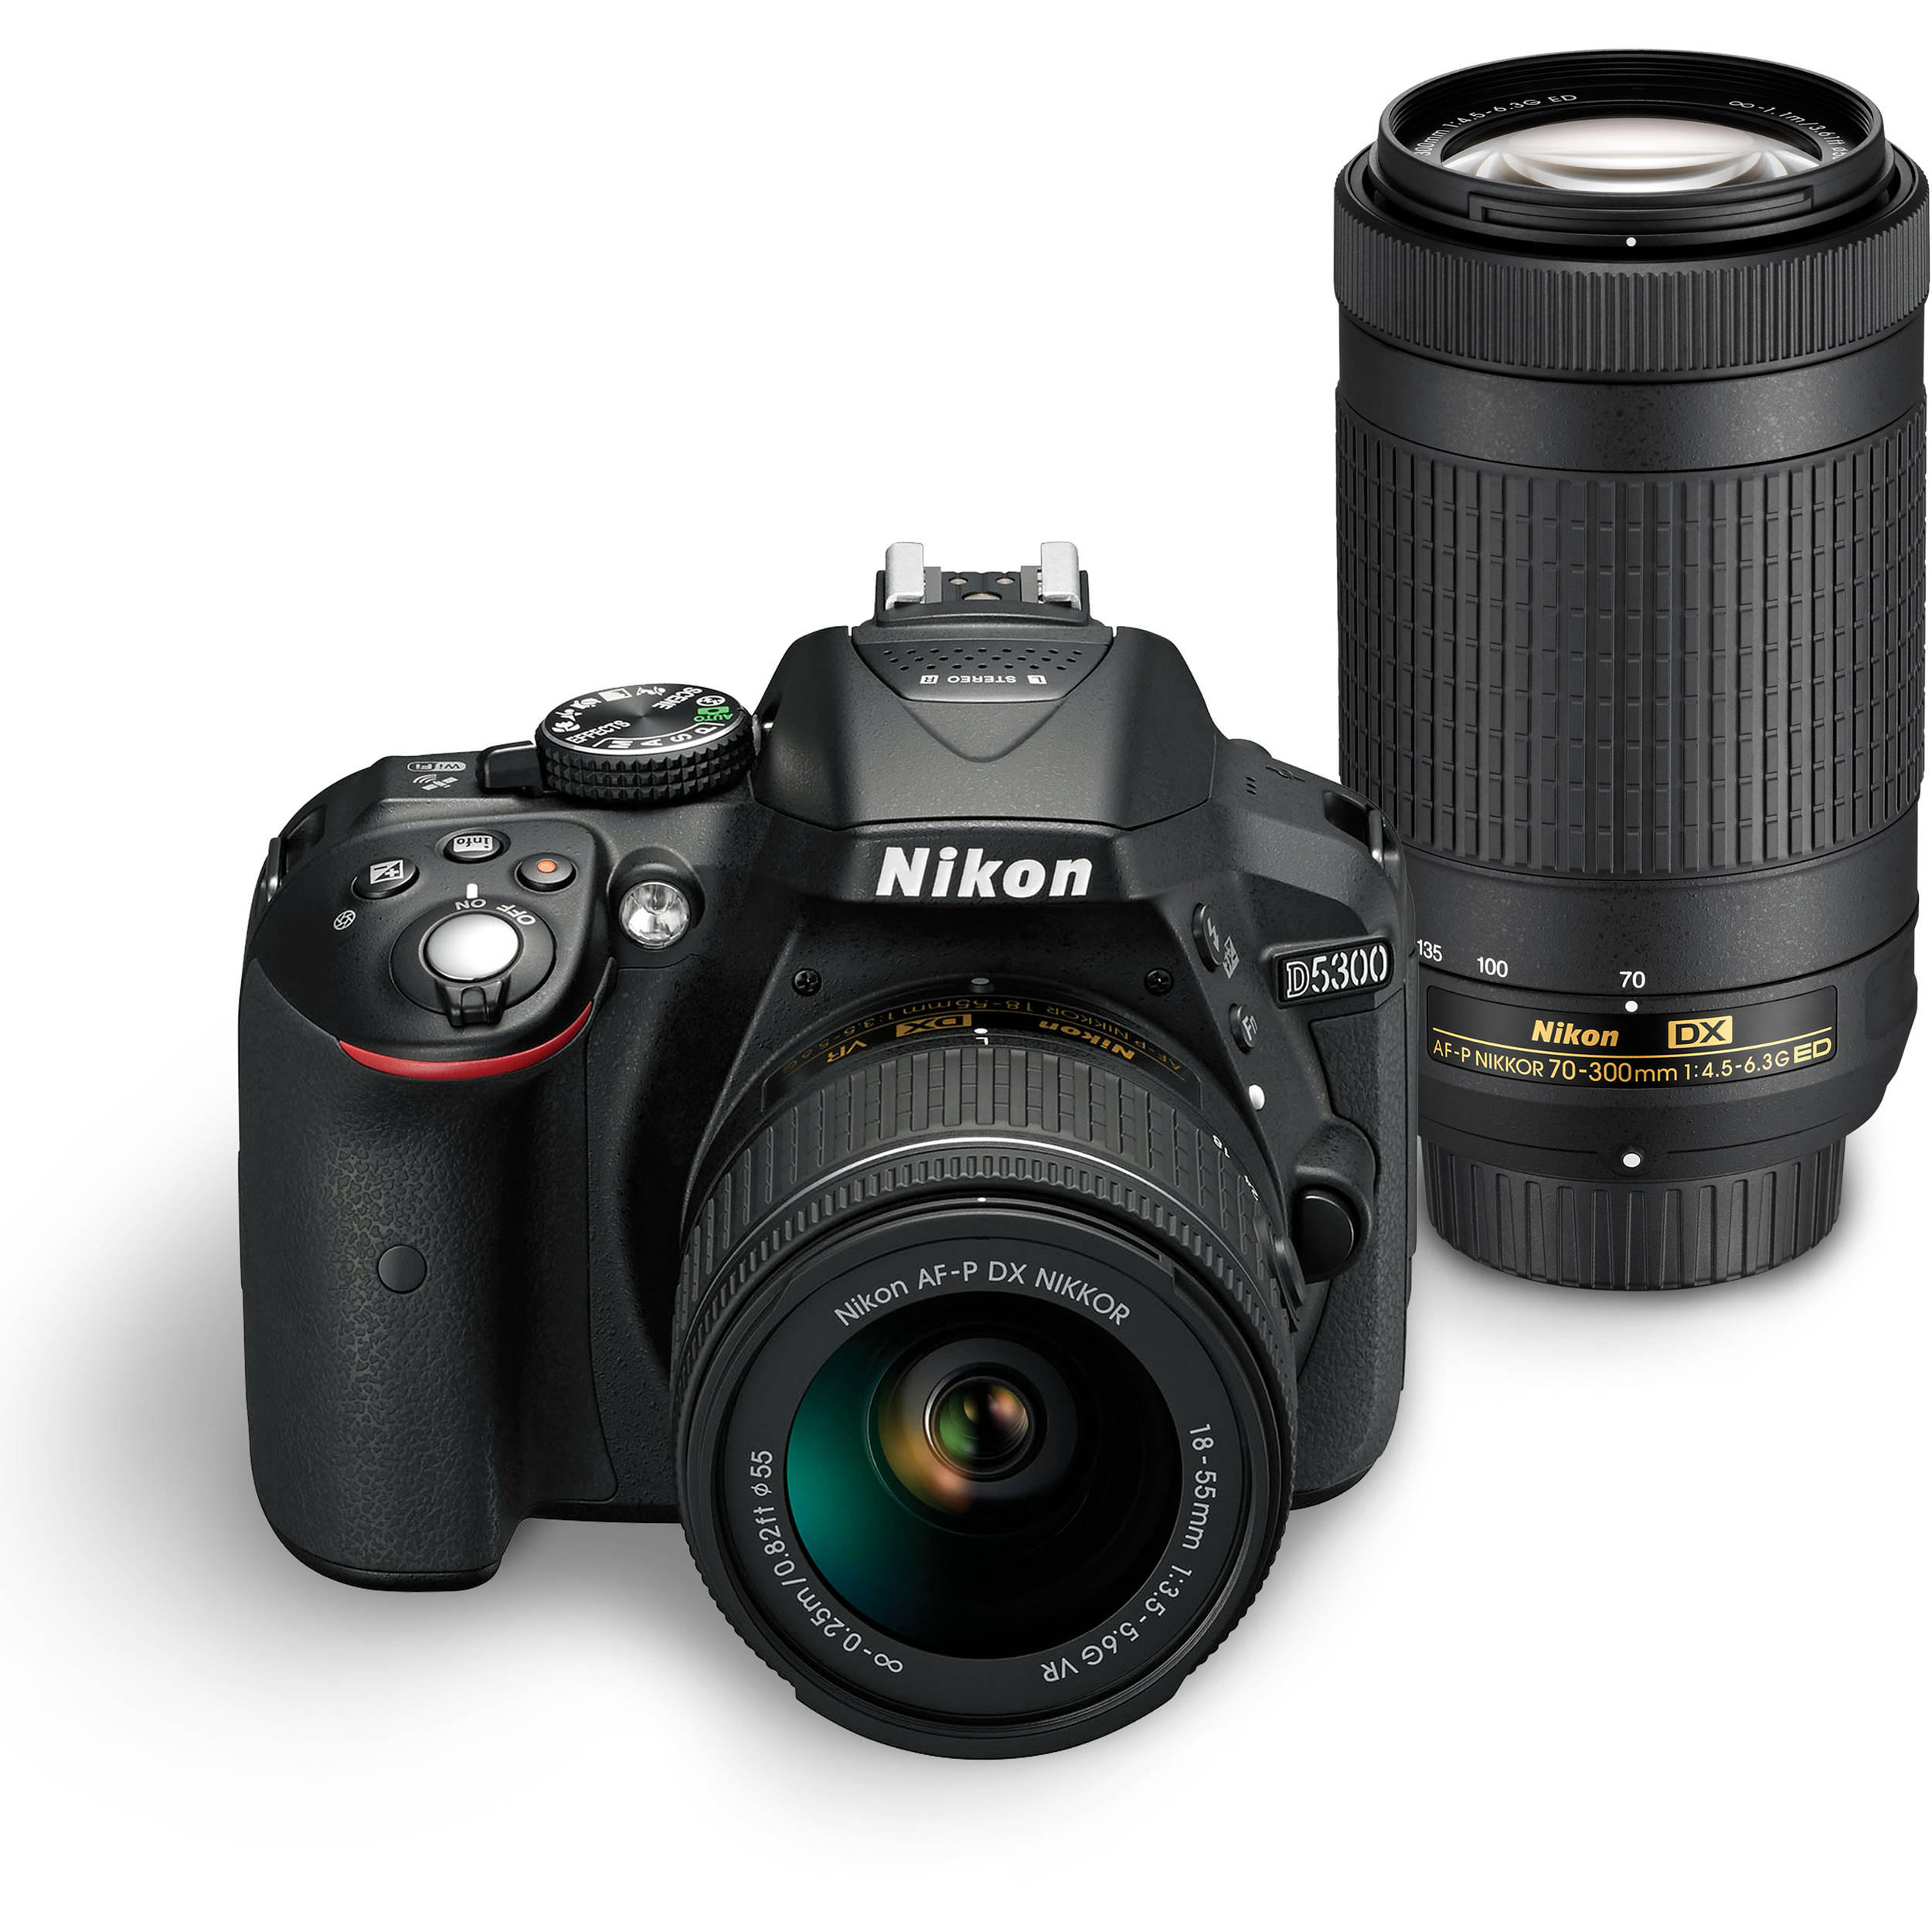 Nikon D5300 DSLR Camera Dual Lens Kit 1579 BH Photo Video